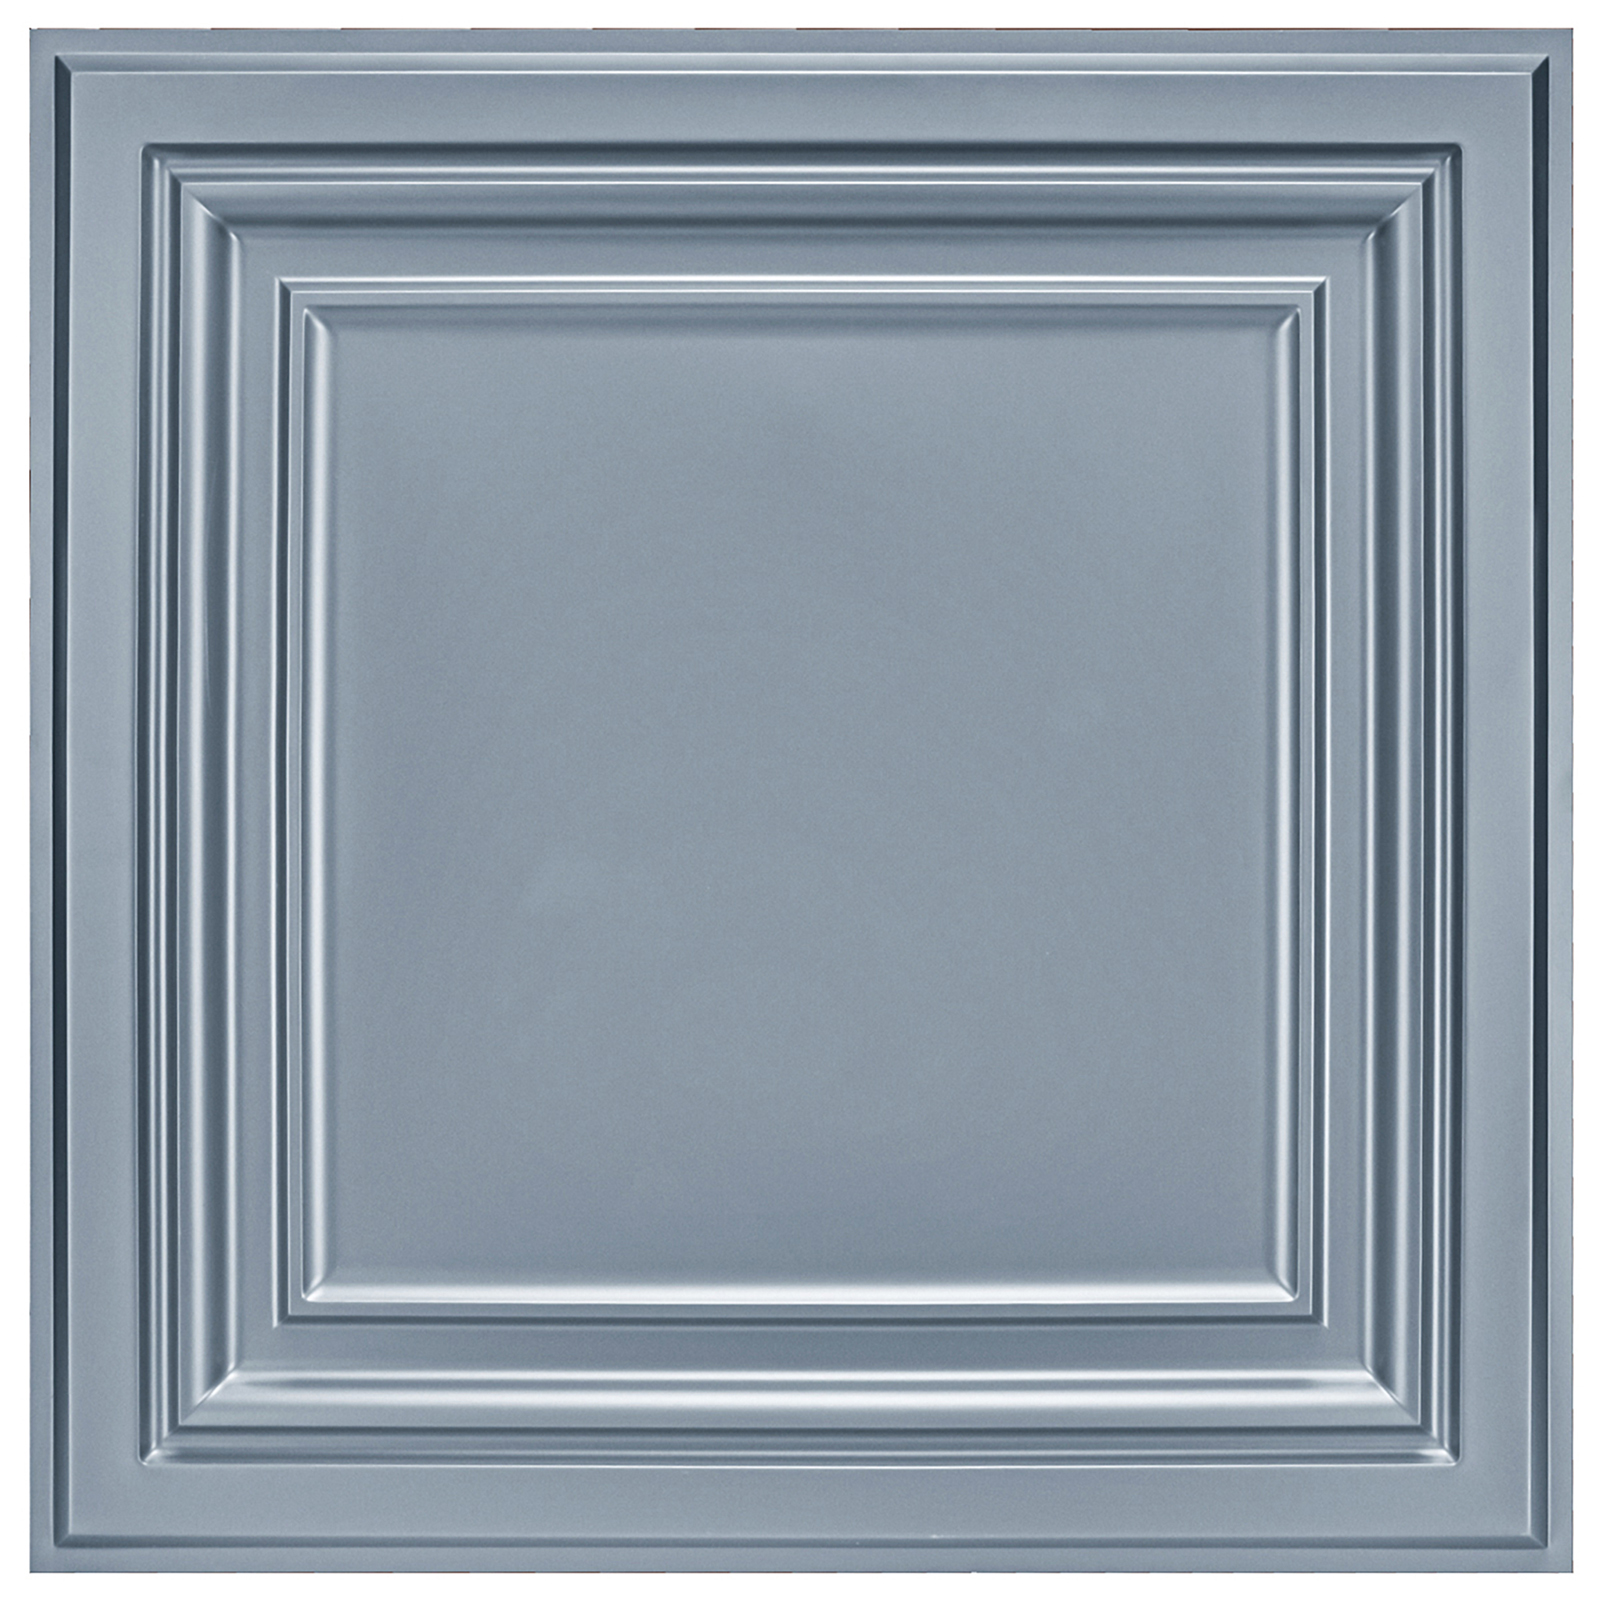 A10905p12 Art Pvc Ceiling Tiles 2